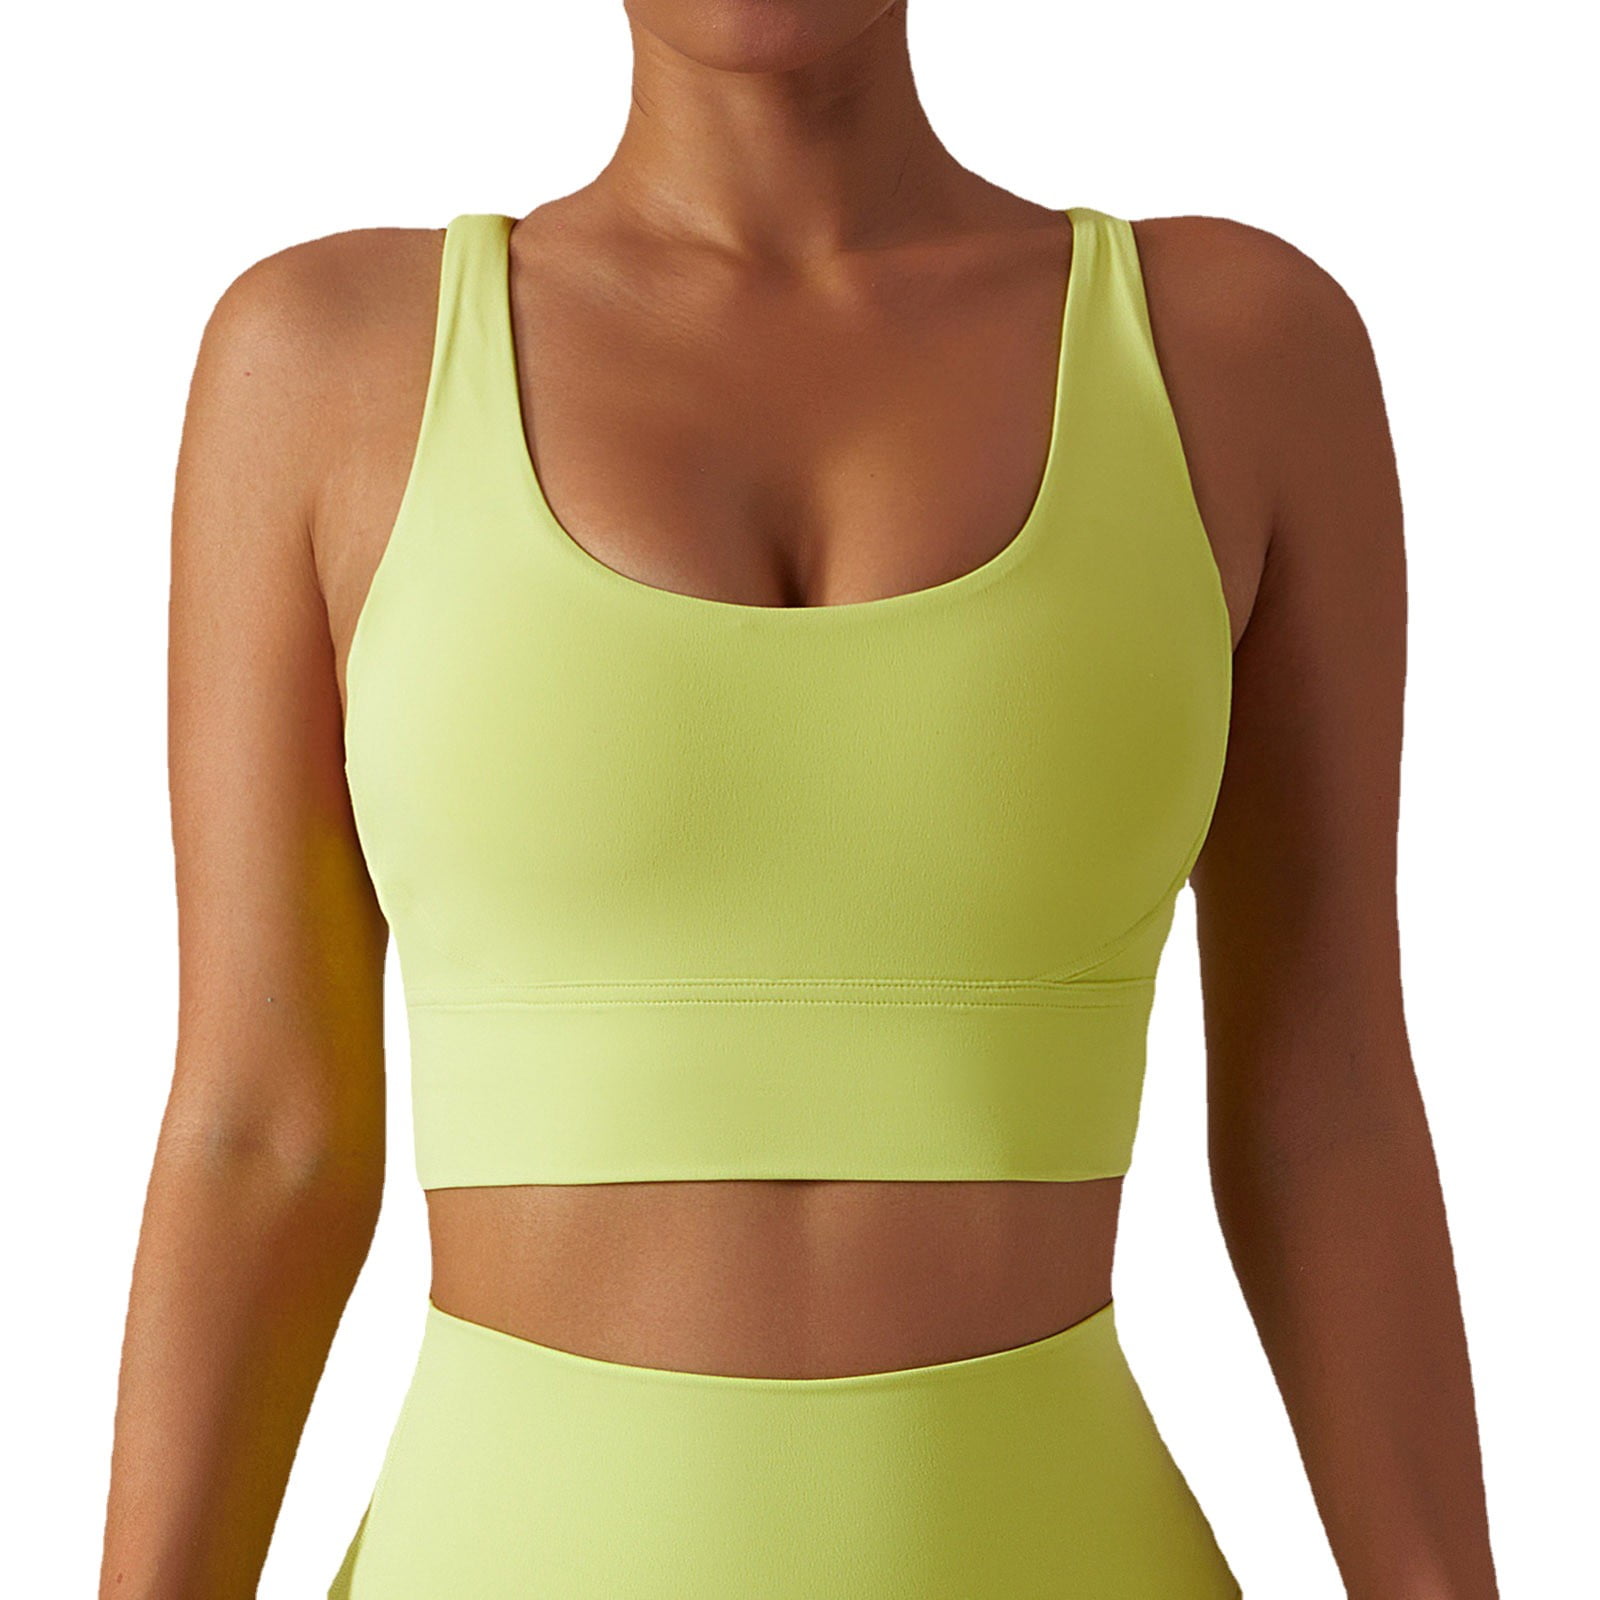 Nanoedge Women's Light Support Seamless Sport Bra Wireless Yoga Bralette  Top (28 Till 34) Padded Bra Pack of 1 (Green)